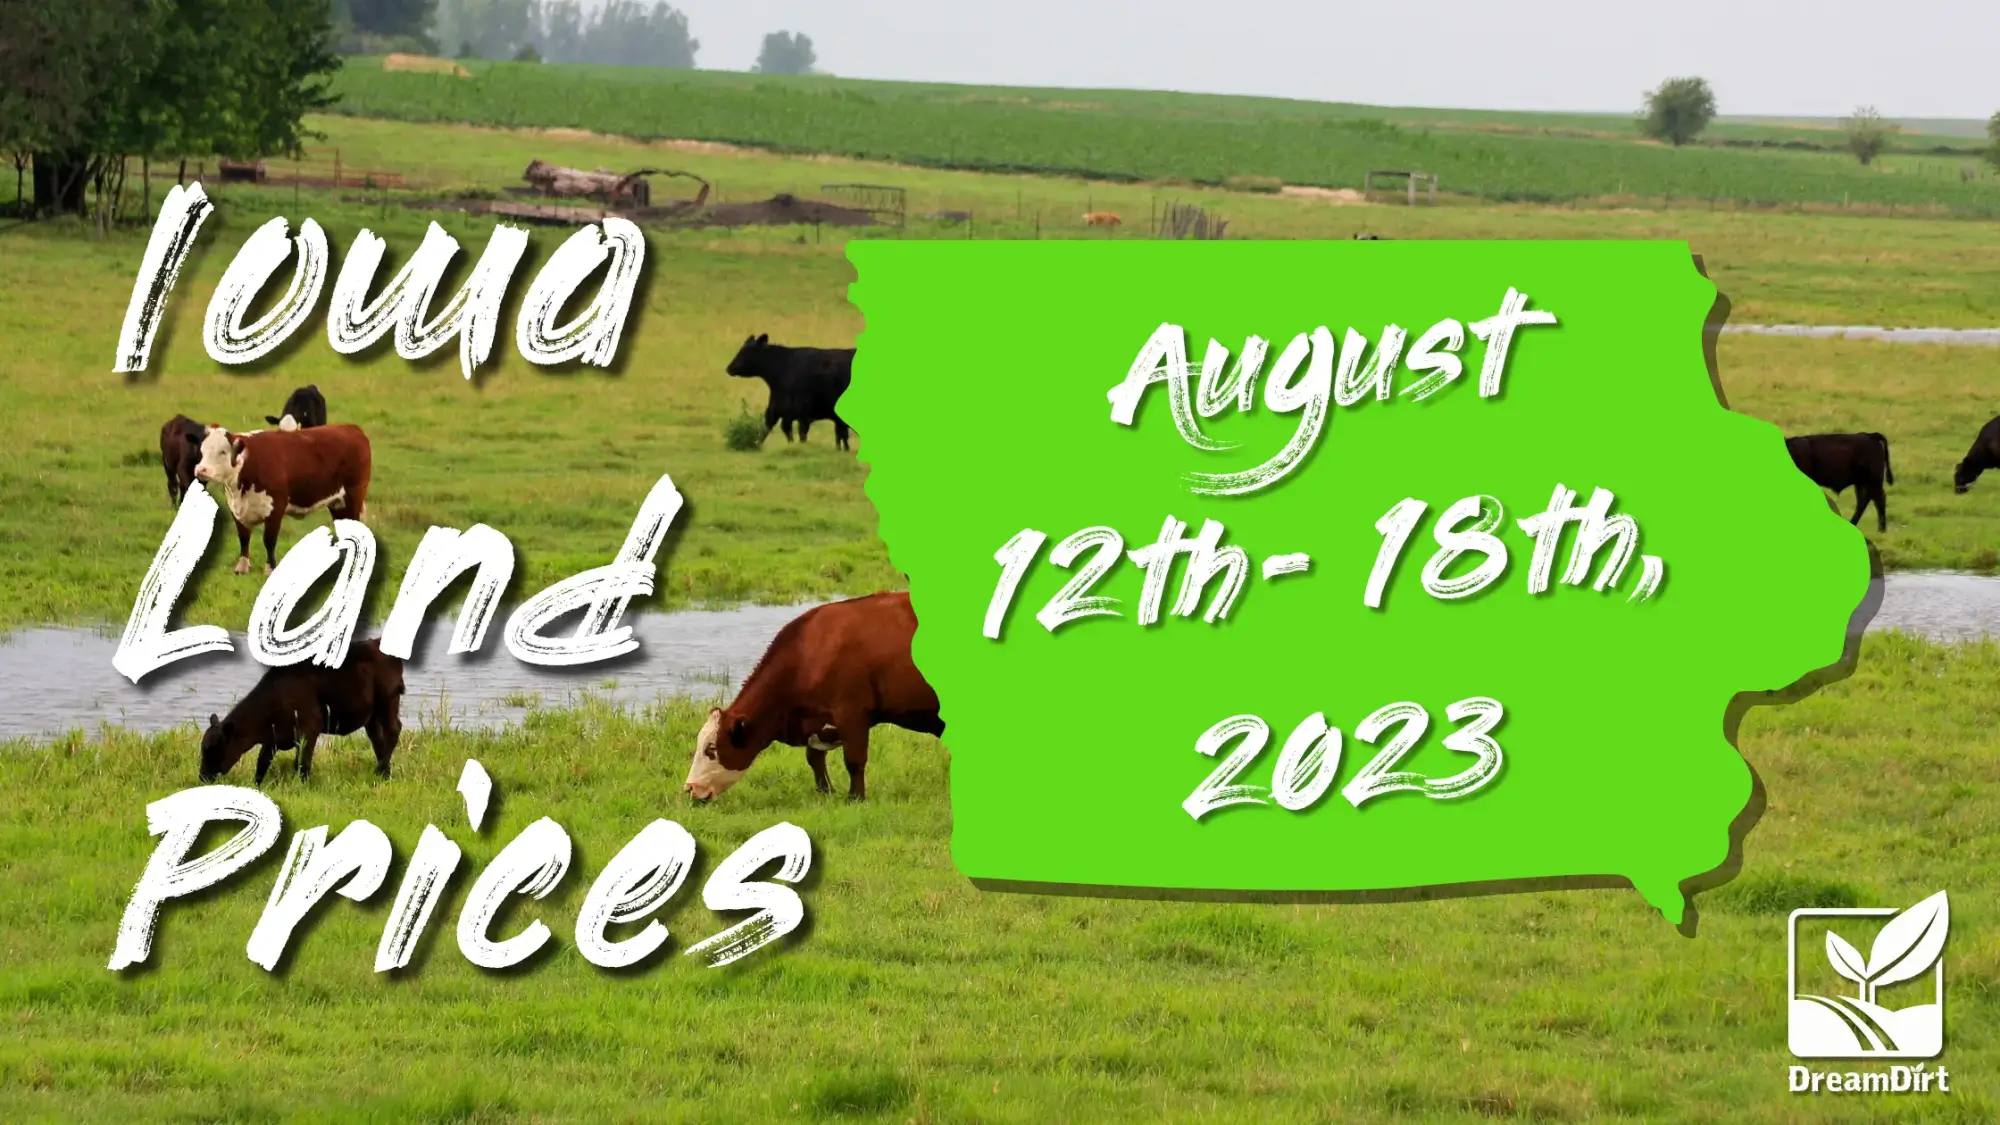 Iowa land prices Aug 12-18th, 2023